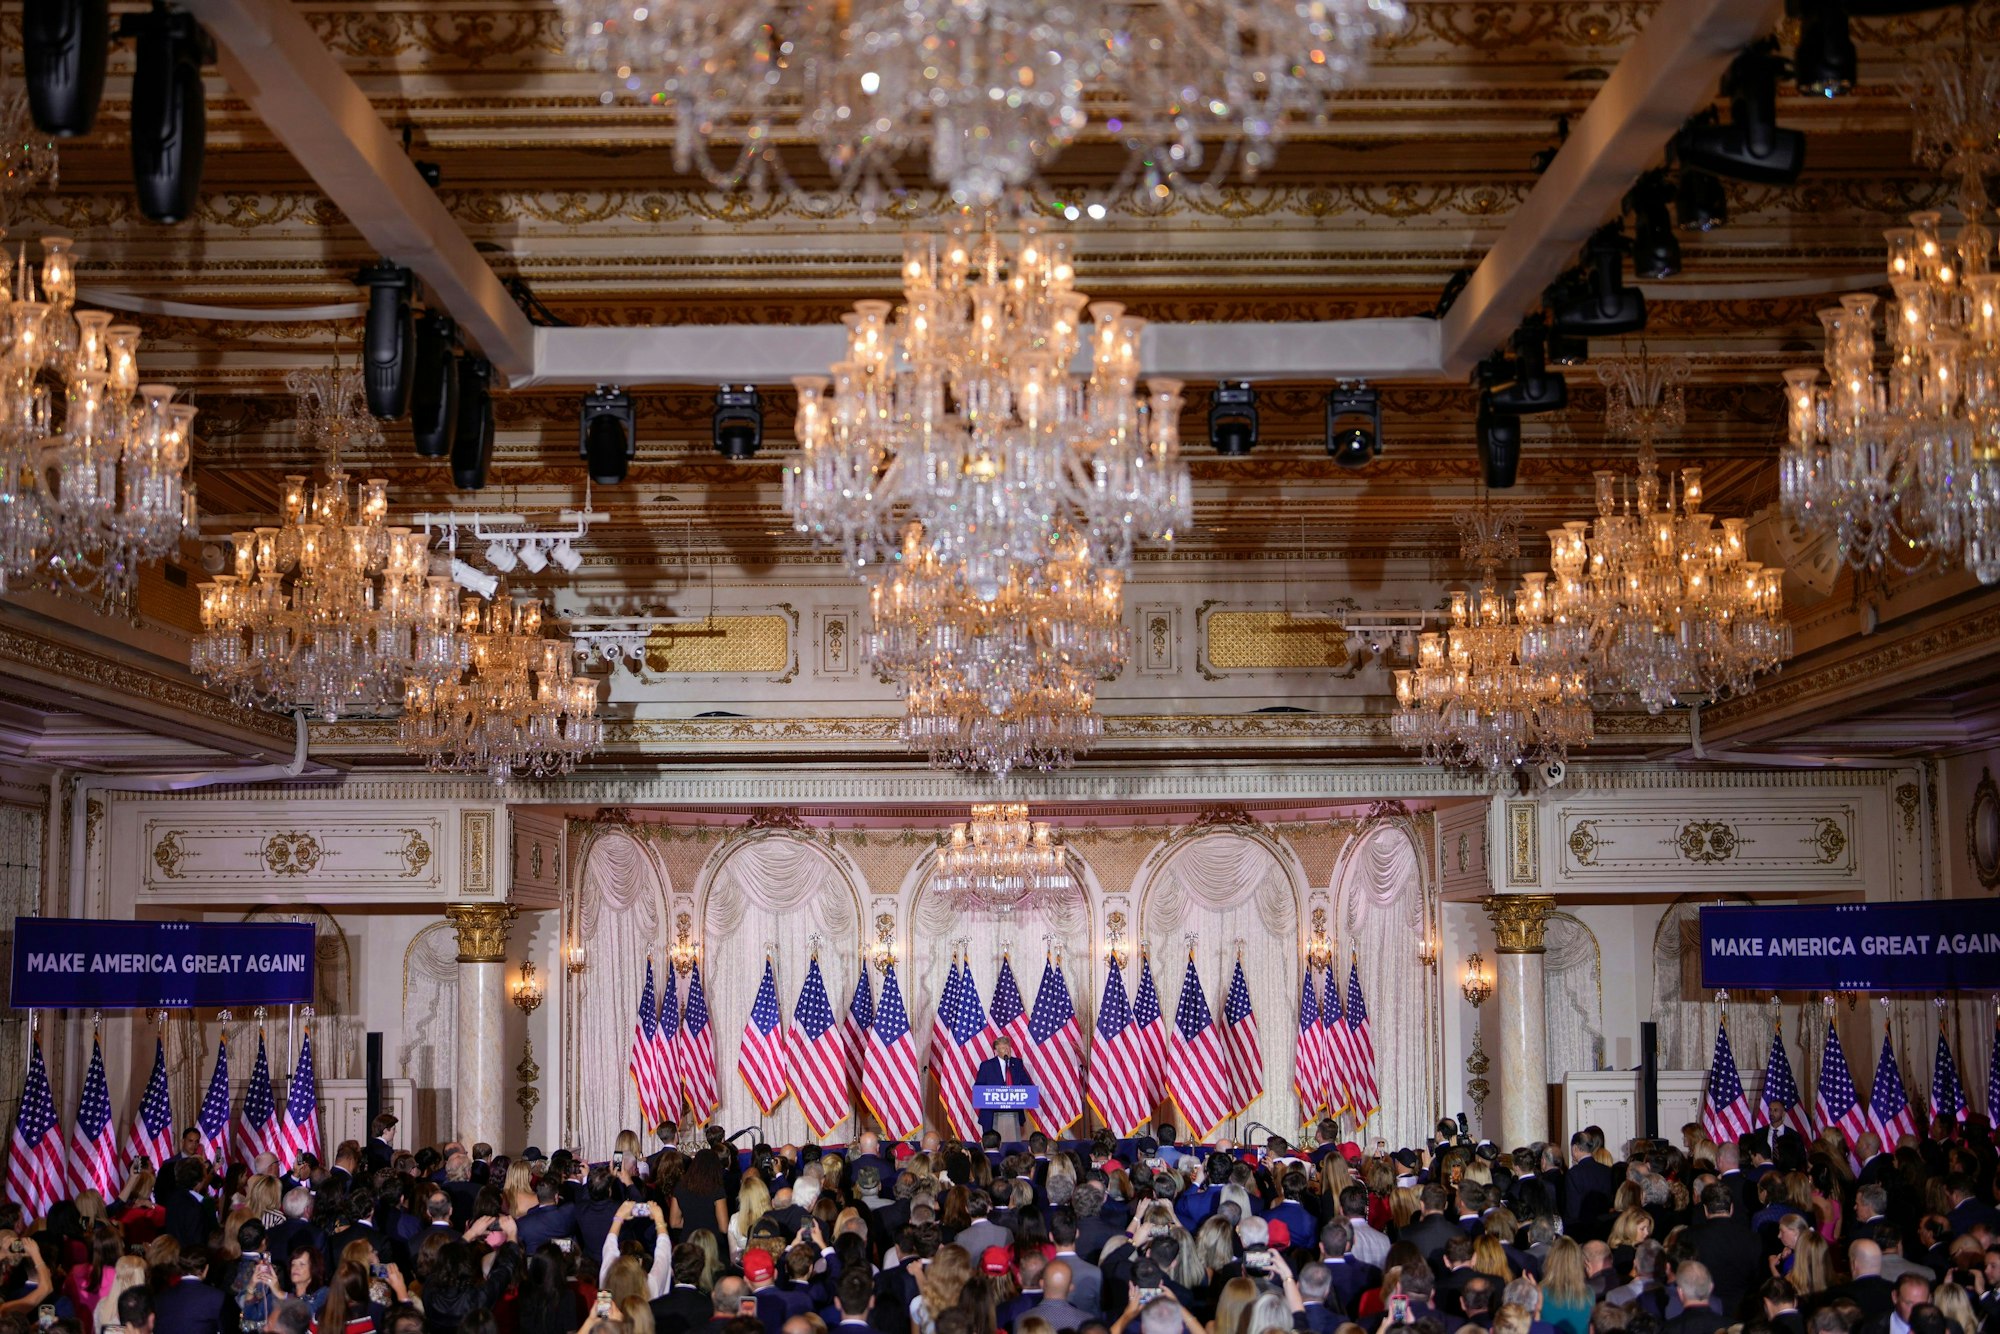 Inszenierung in Trumps Hotel in Florida: ein mit vielen US-Fahnen geschmückter Balsall in Mar-a-Lago. Auf der Bühne ist Donald Trump zu erkennen.